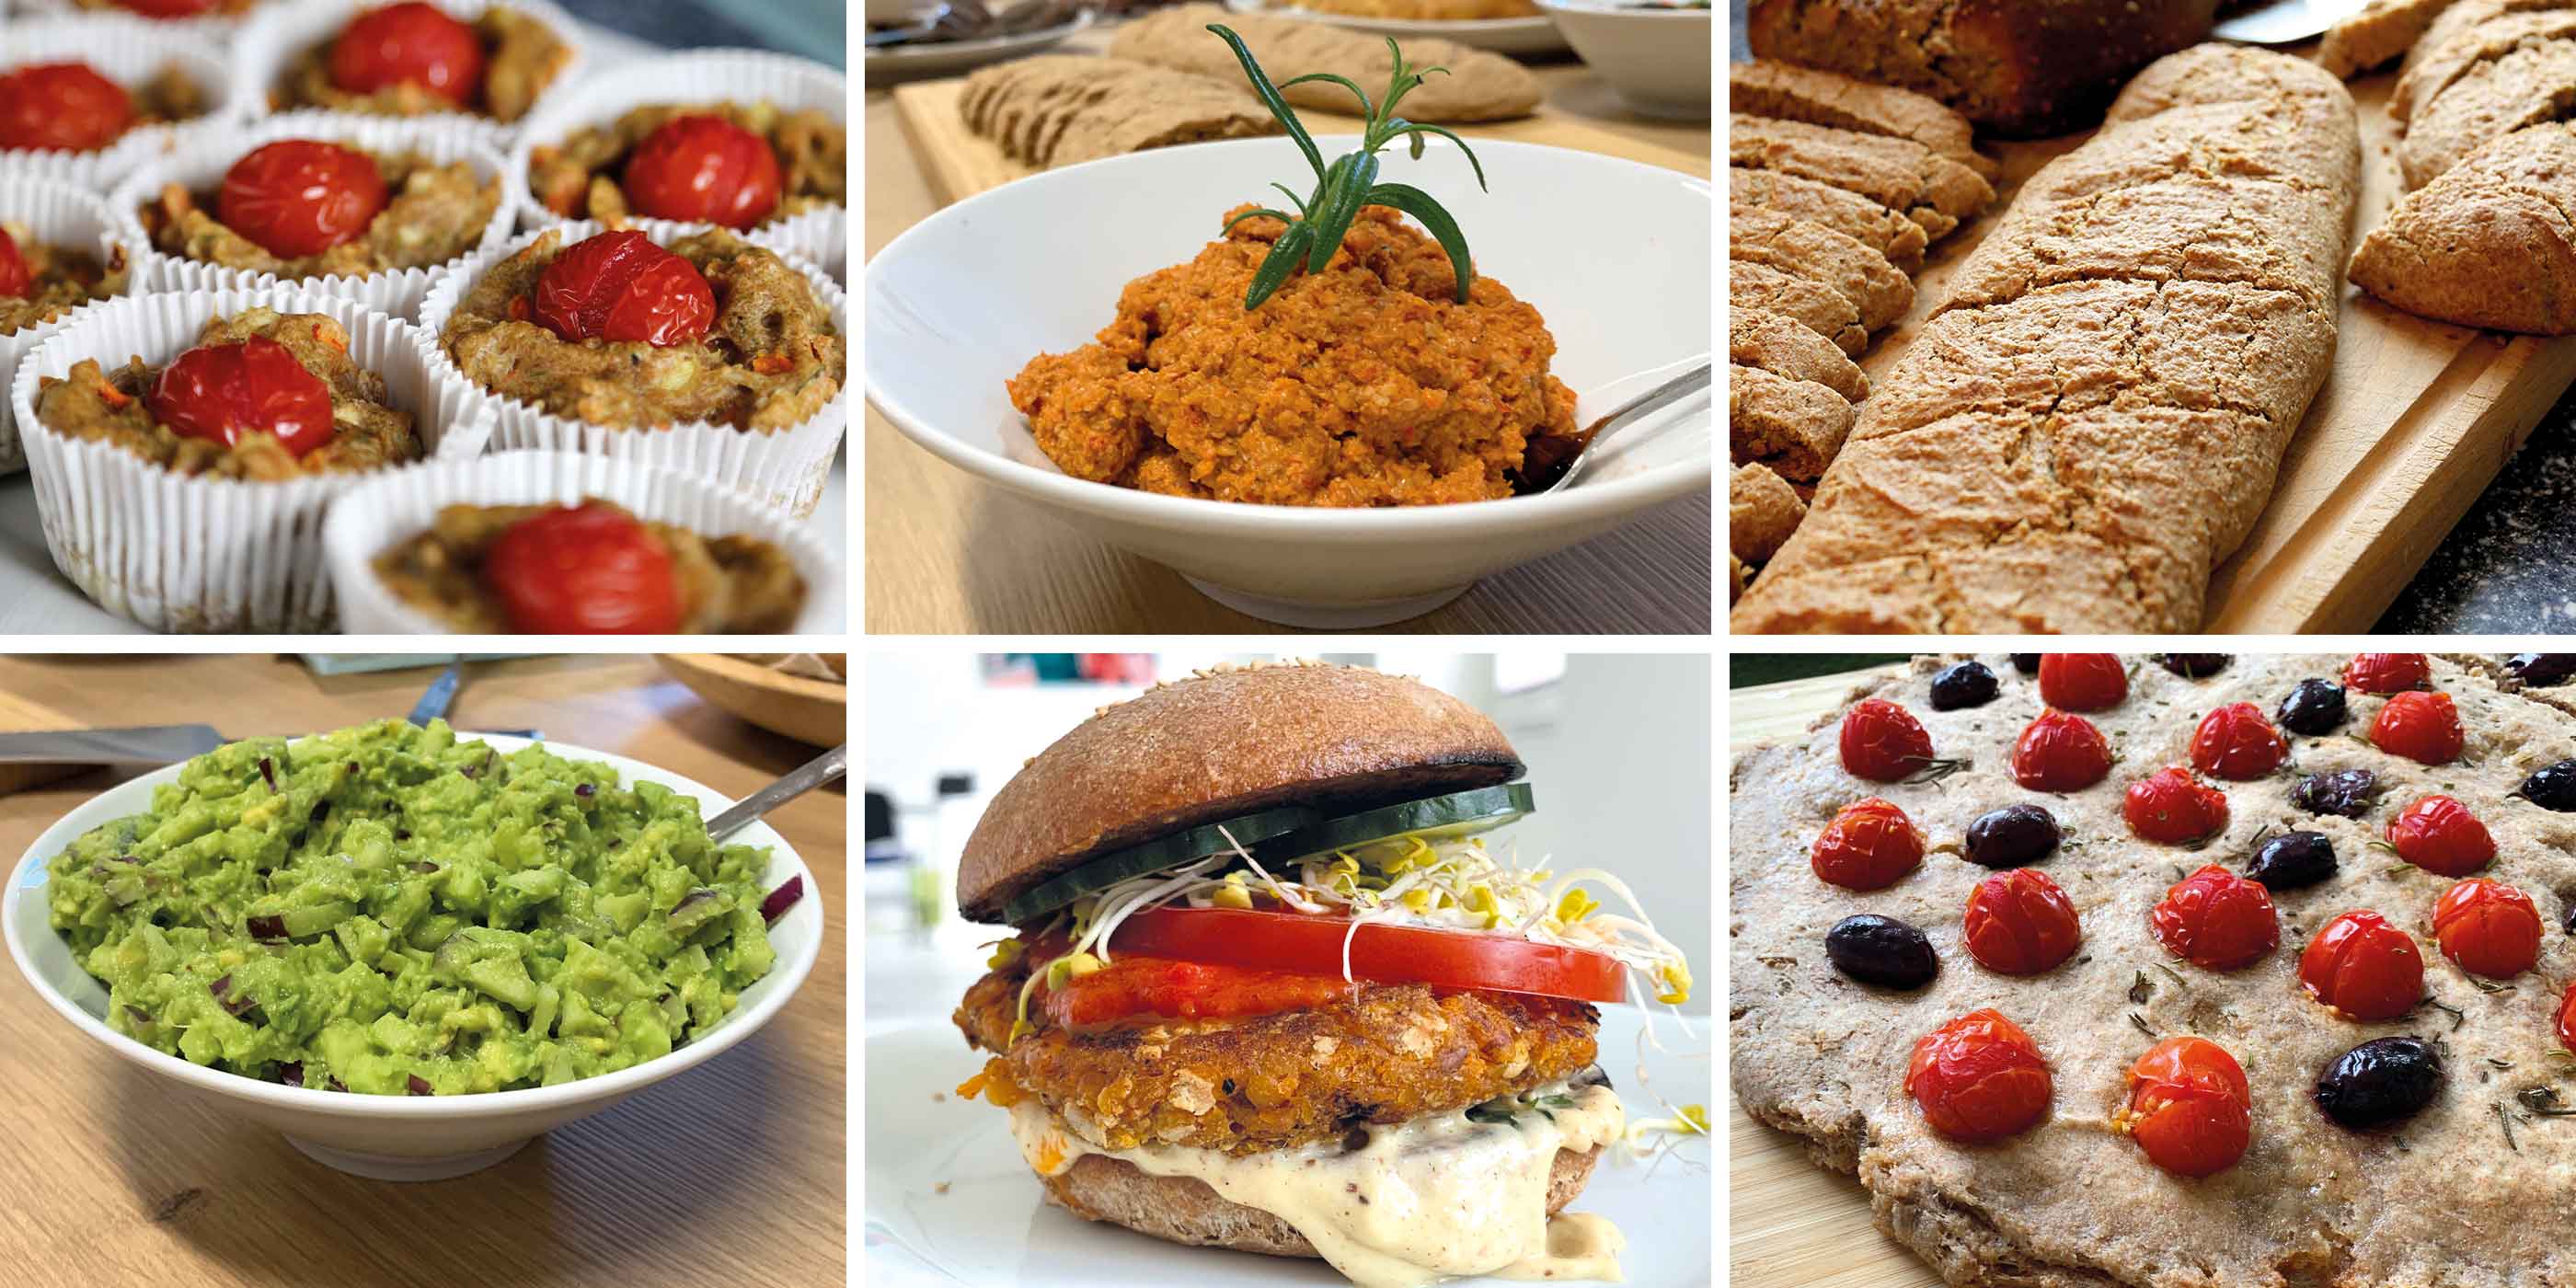 Eine Collage zeigt in den Kochkursen der Kochschule gezauberte Gerichte und Rezepte, darunter Baquette, Burger, Rohkost, Avocado und andere Brotaufstriche